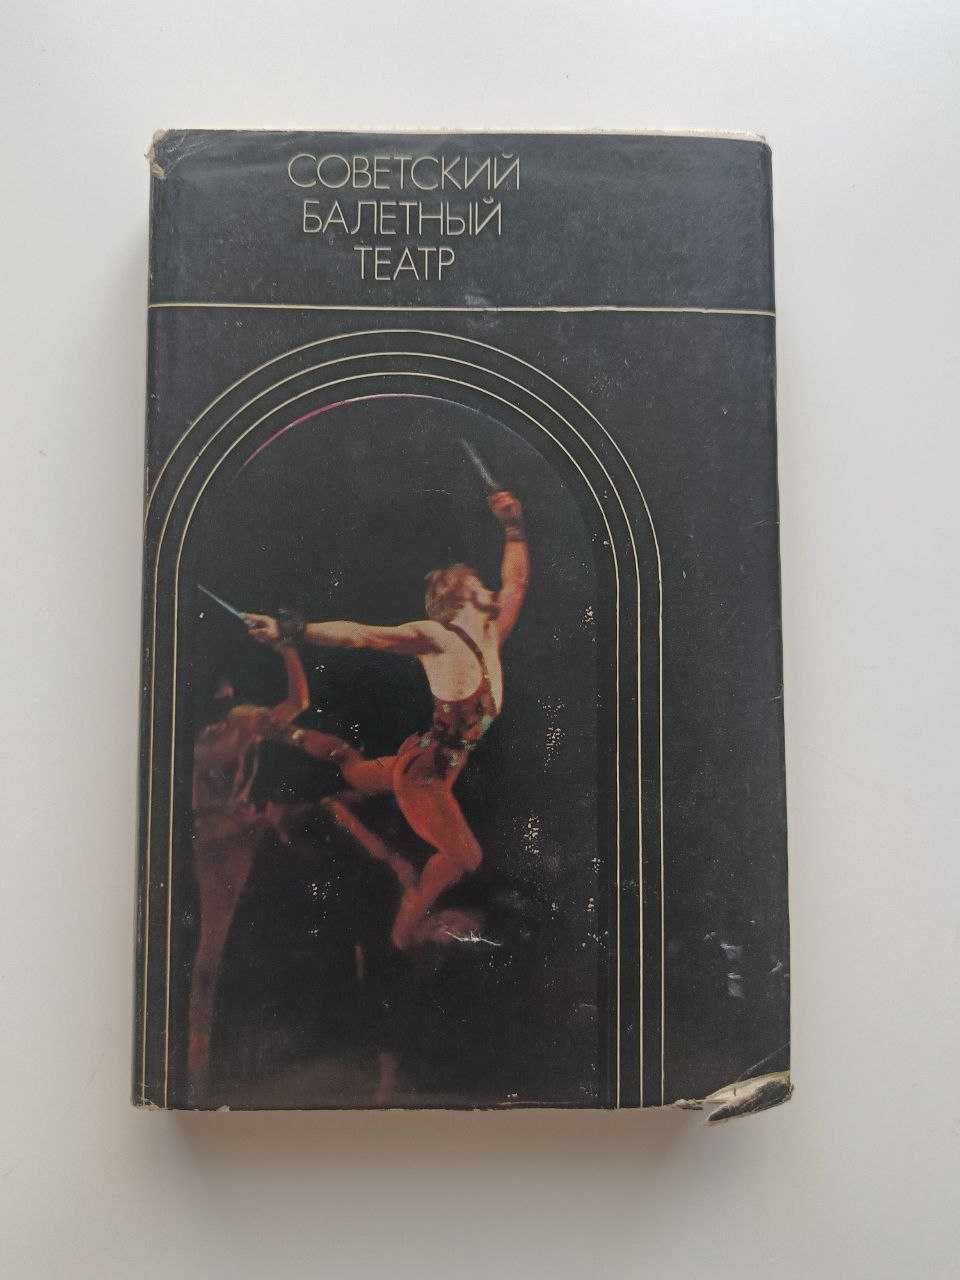 Книга про балет. Книга 1976 року. Книга про історію балета ссср